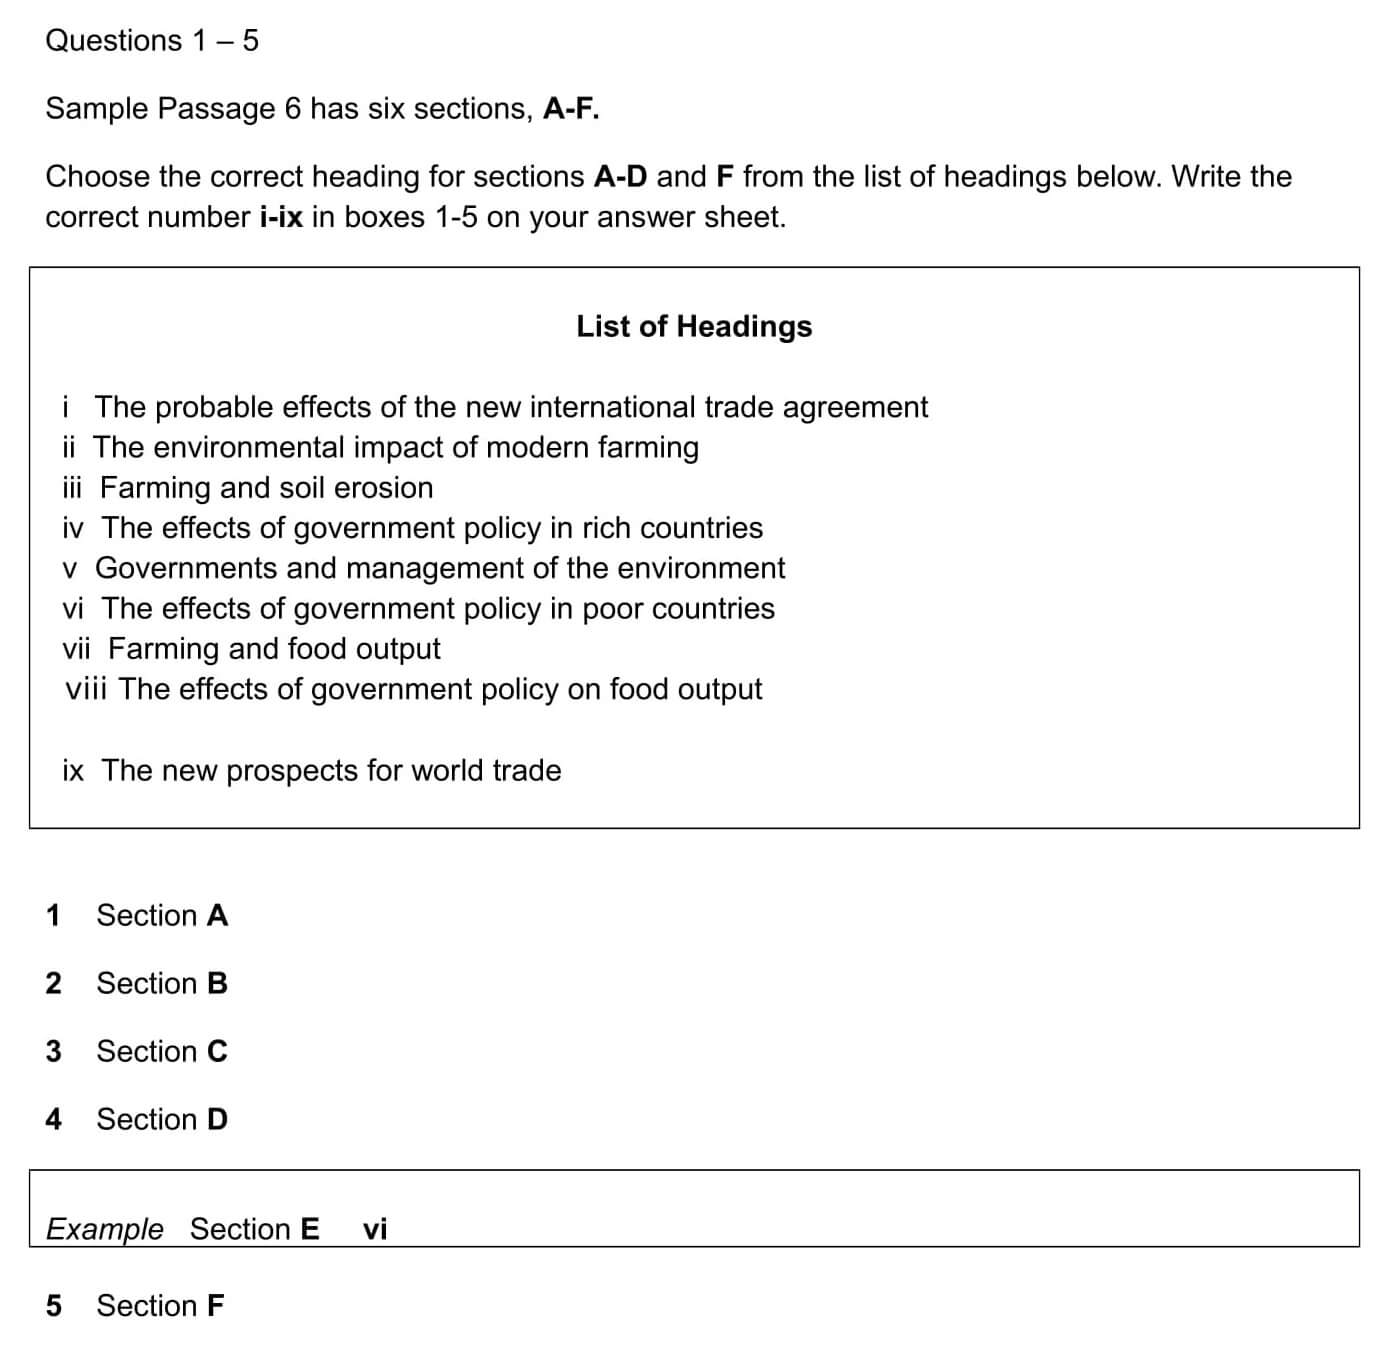 Bài làm dạng Matching Heading Questions IELTS